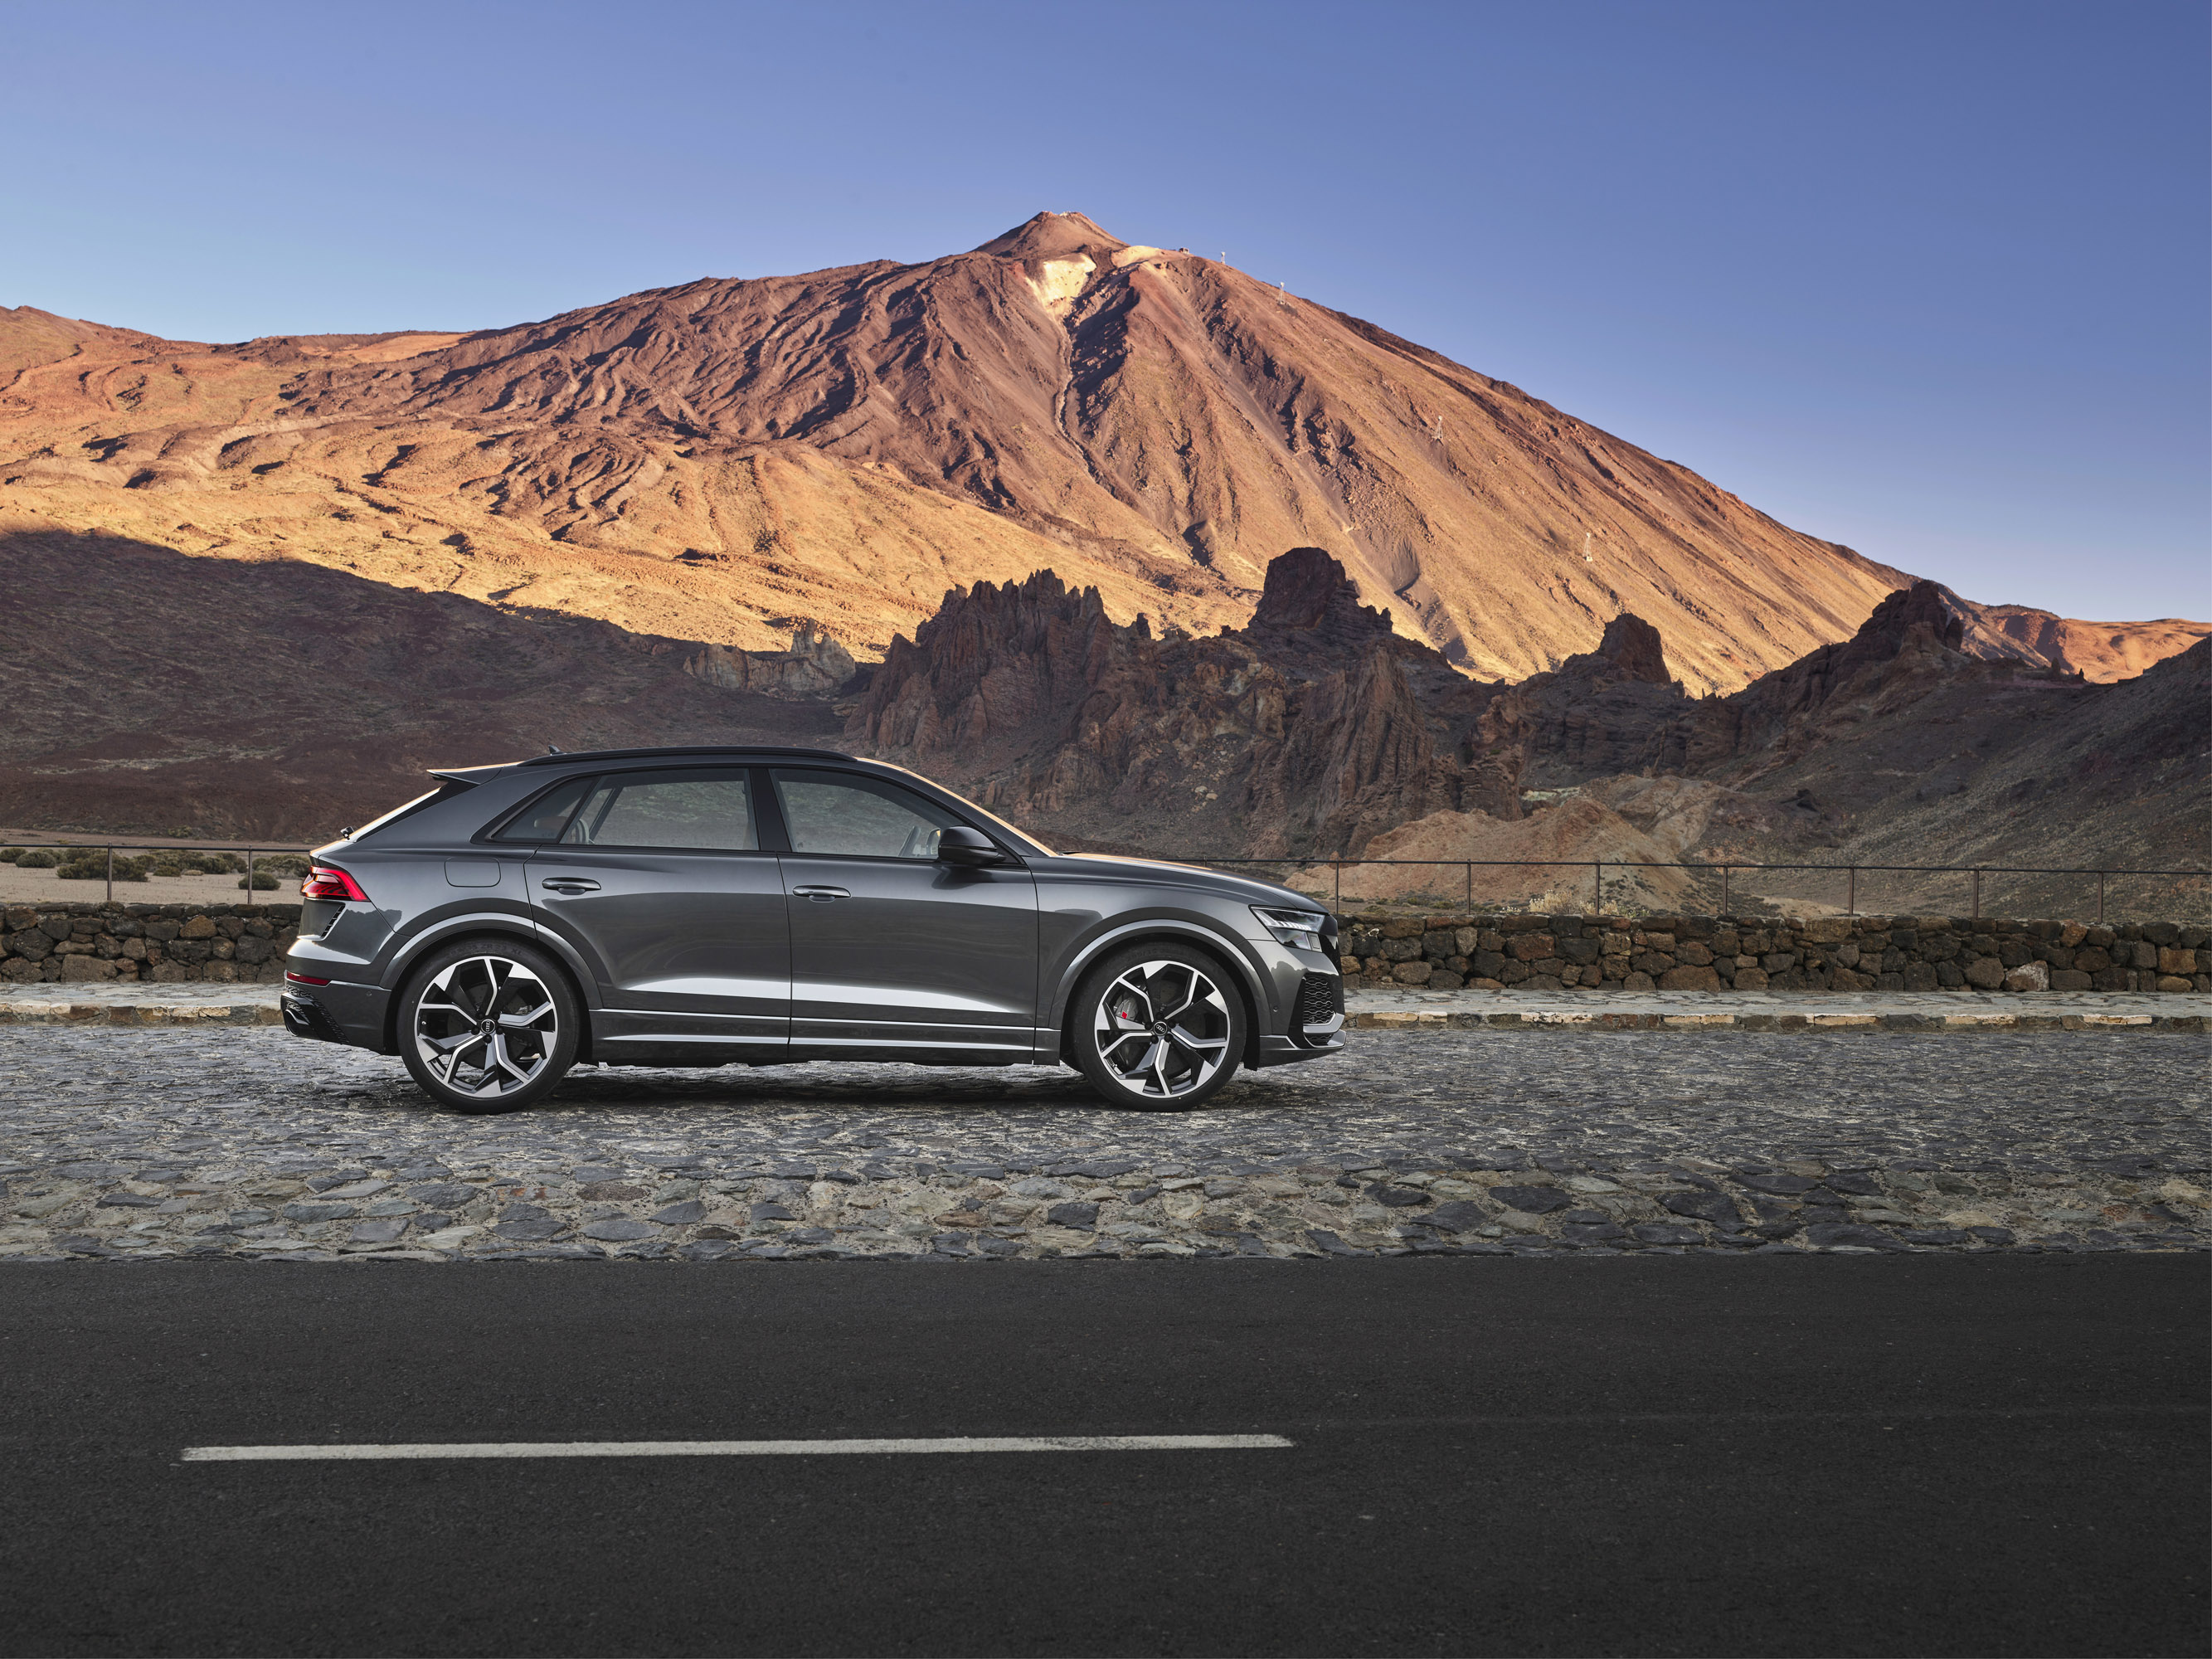 Audi представляет новый RS Q8 - агрессивный и в то же время очень комфортный внедорожник марки!